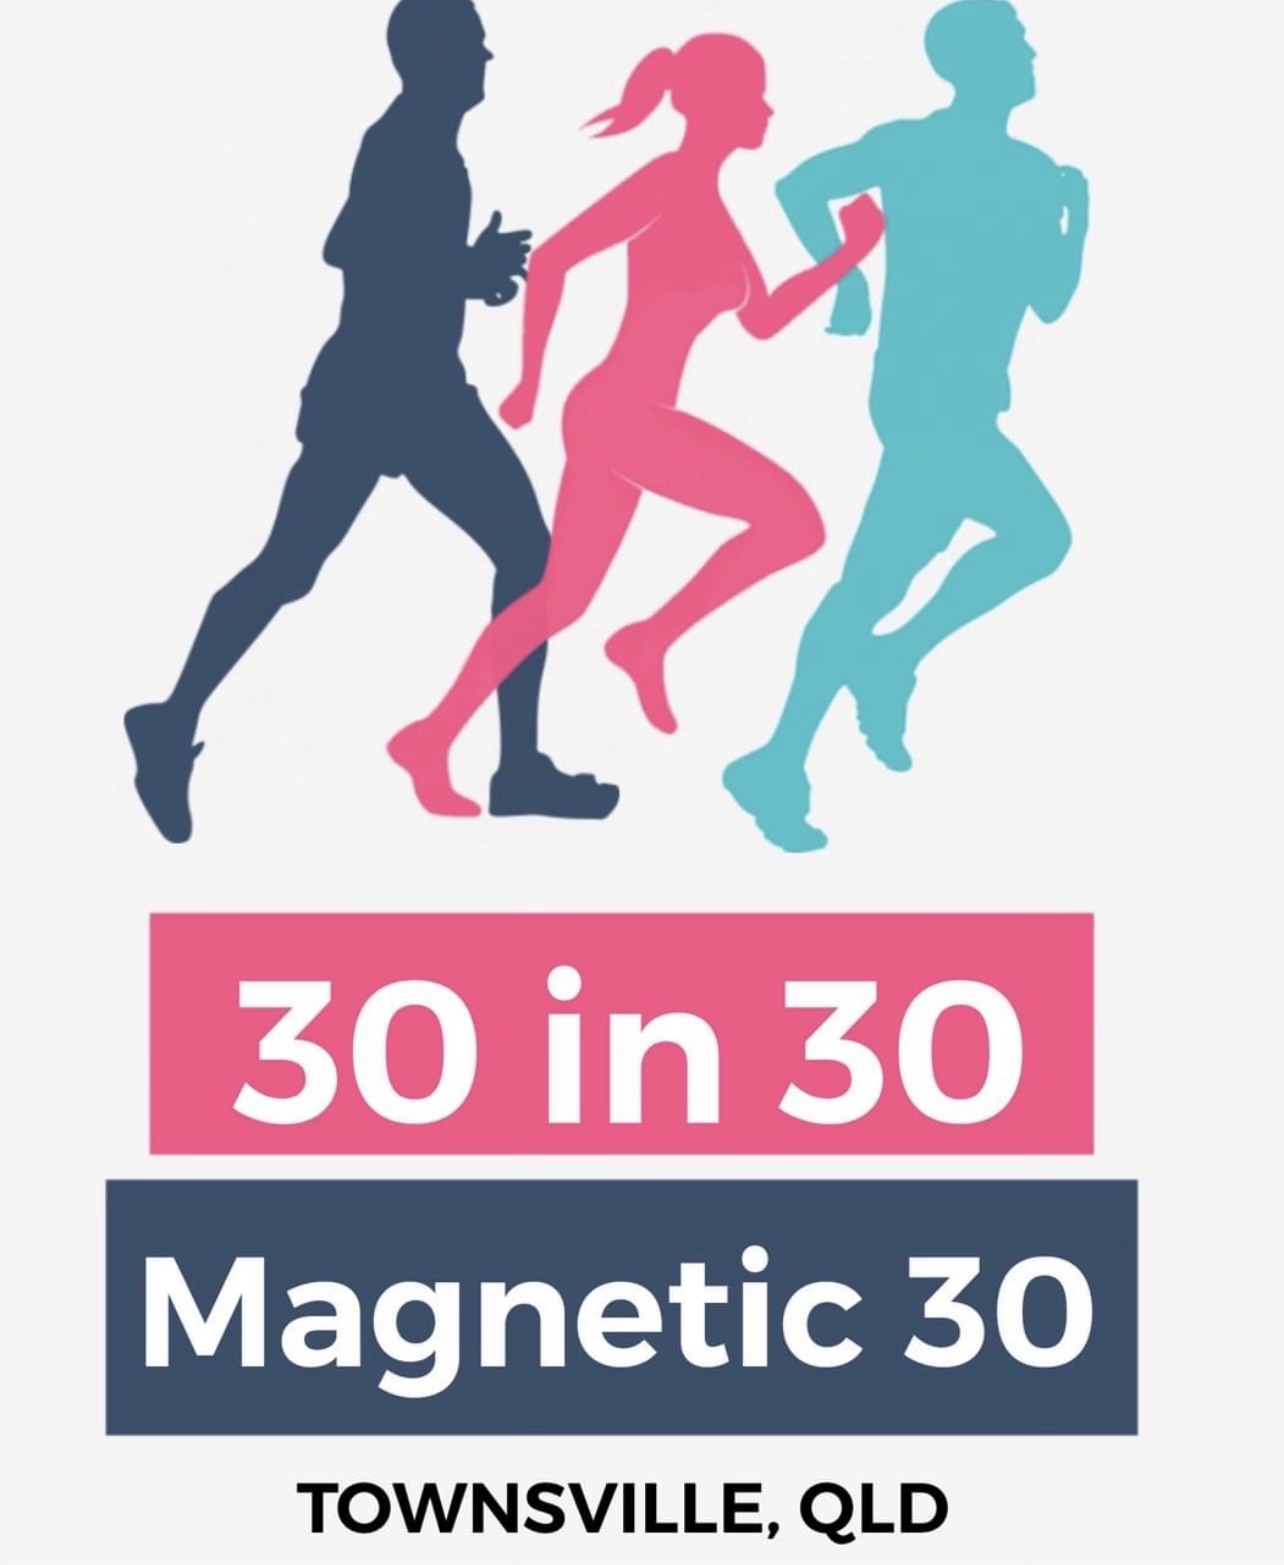 Magnetic 30 in 30 Marathons logo on RaceRaves